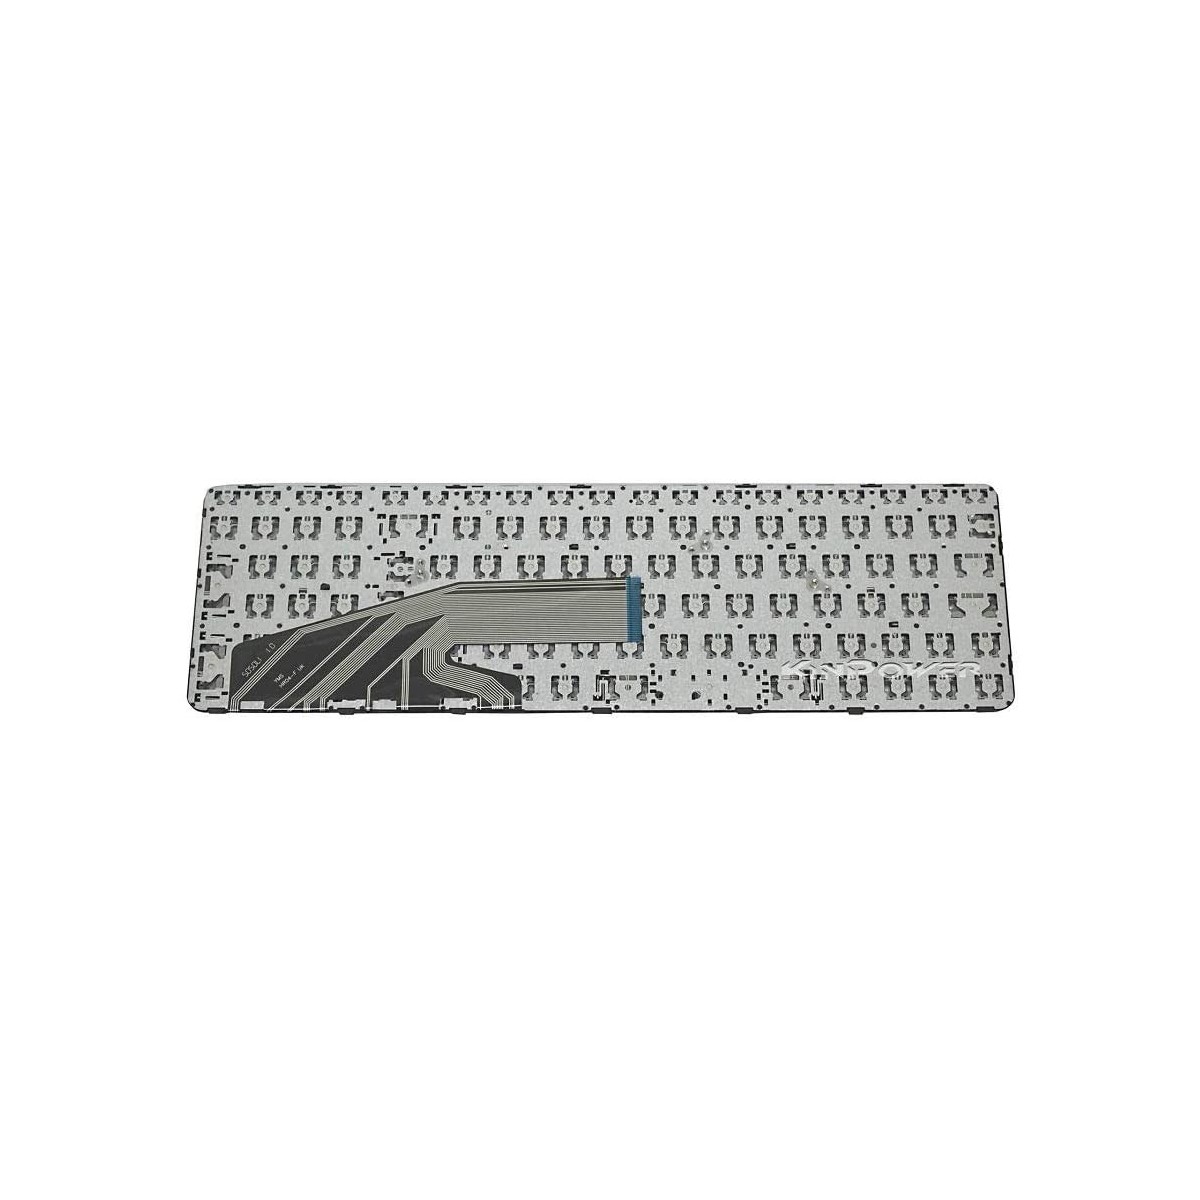 Clavier Français compatible Pour HP ProBook 450 G4 SERIES 836308-001